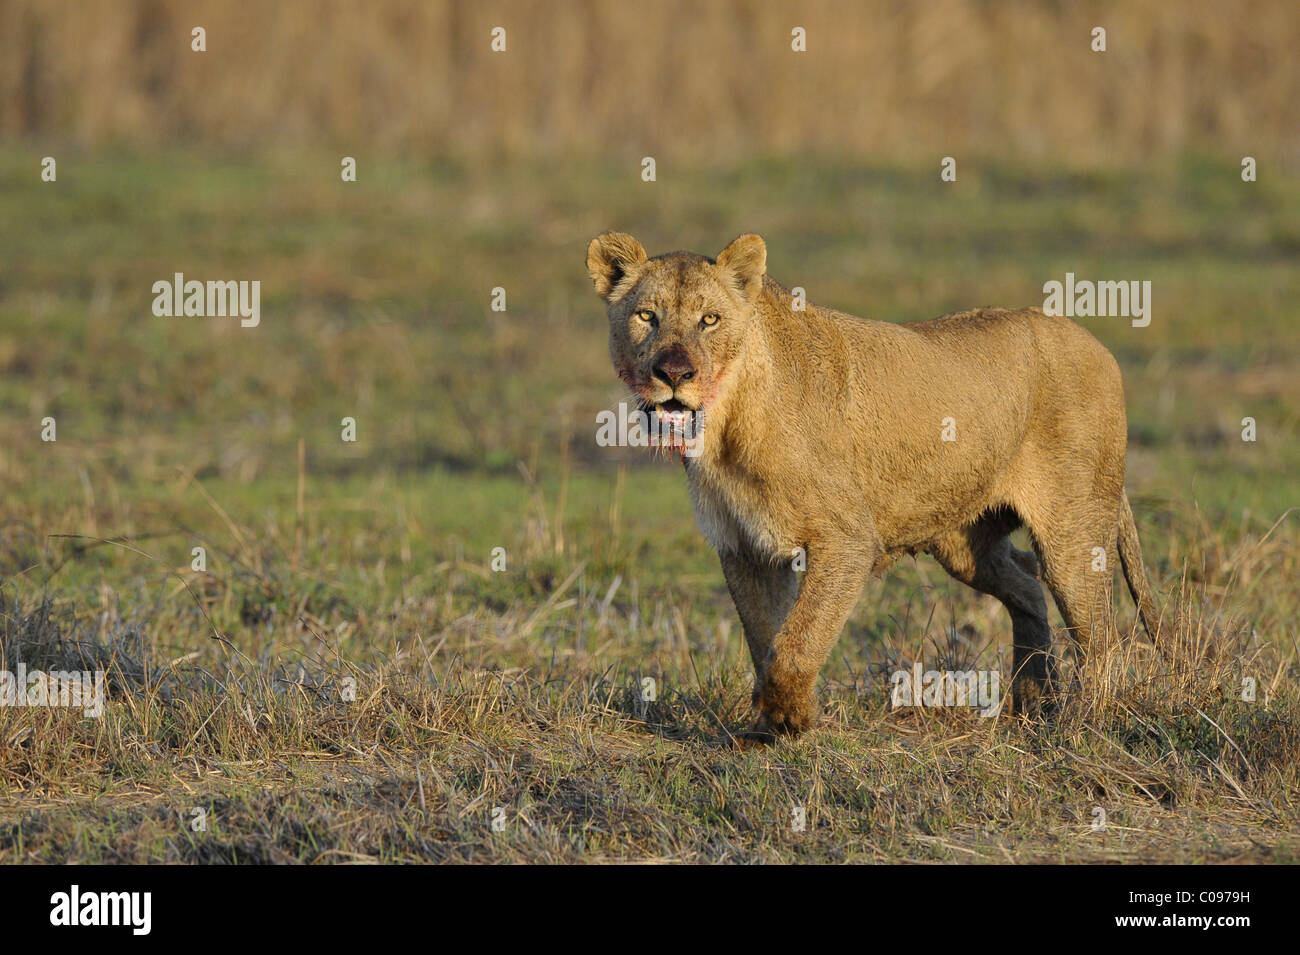 León después de la caza. Un retrato de un león con una boca manchada de sangre. Foto de stock